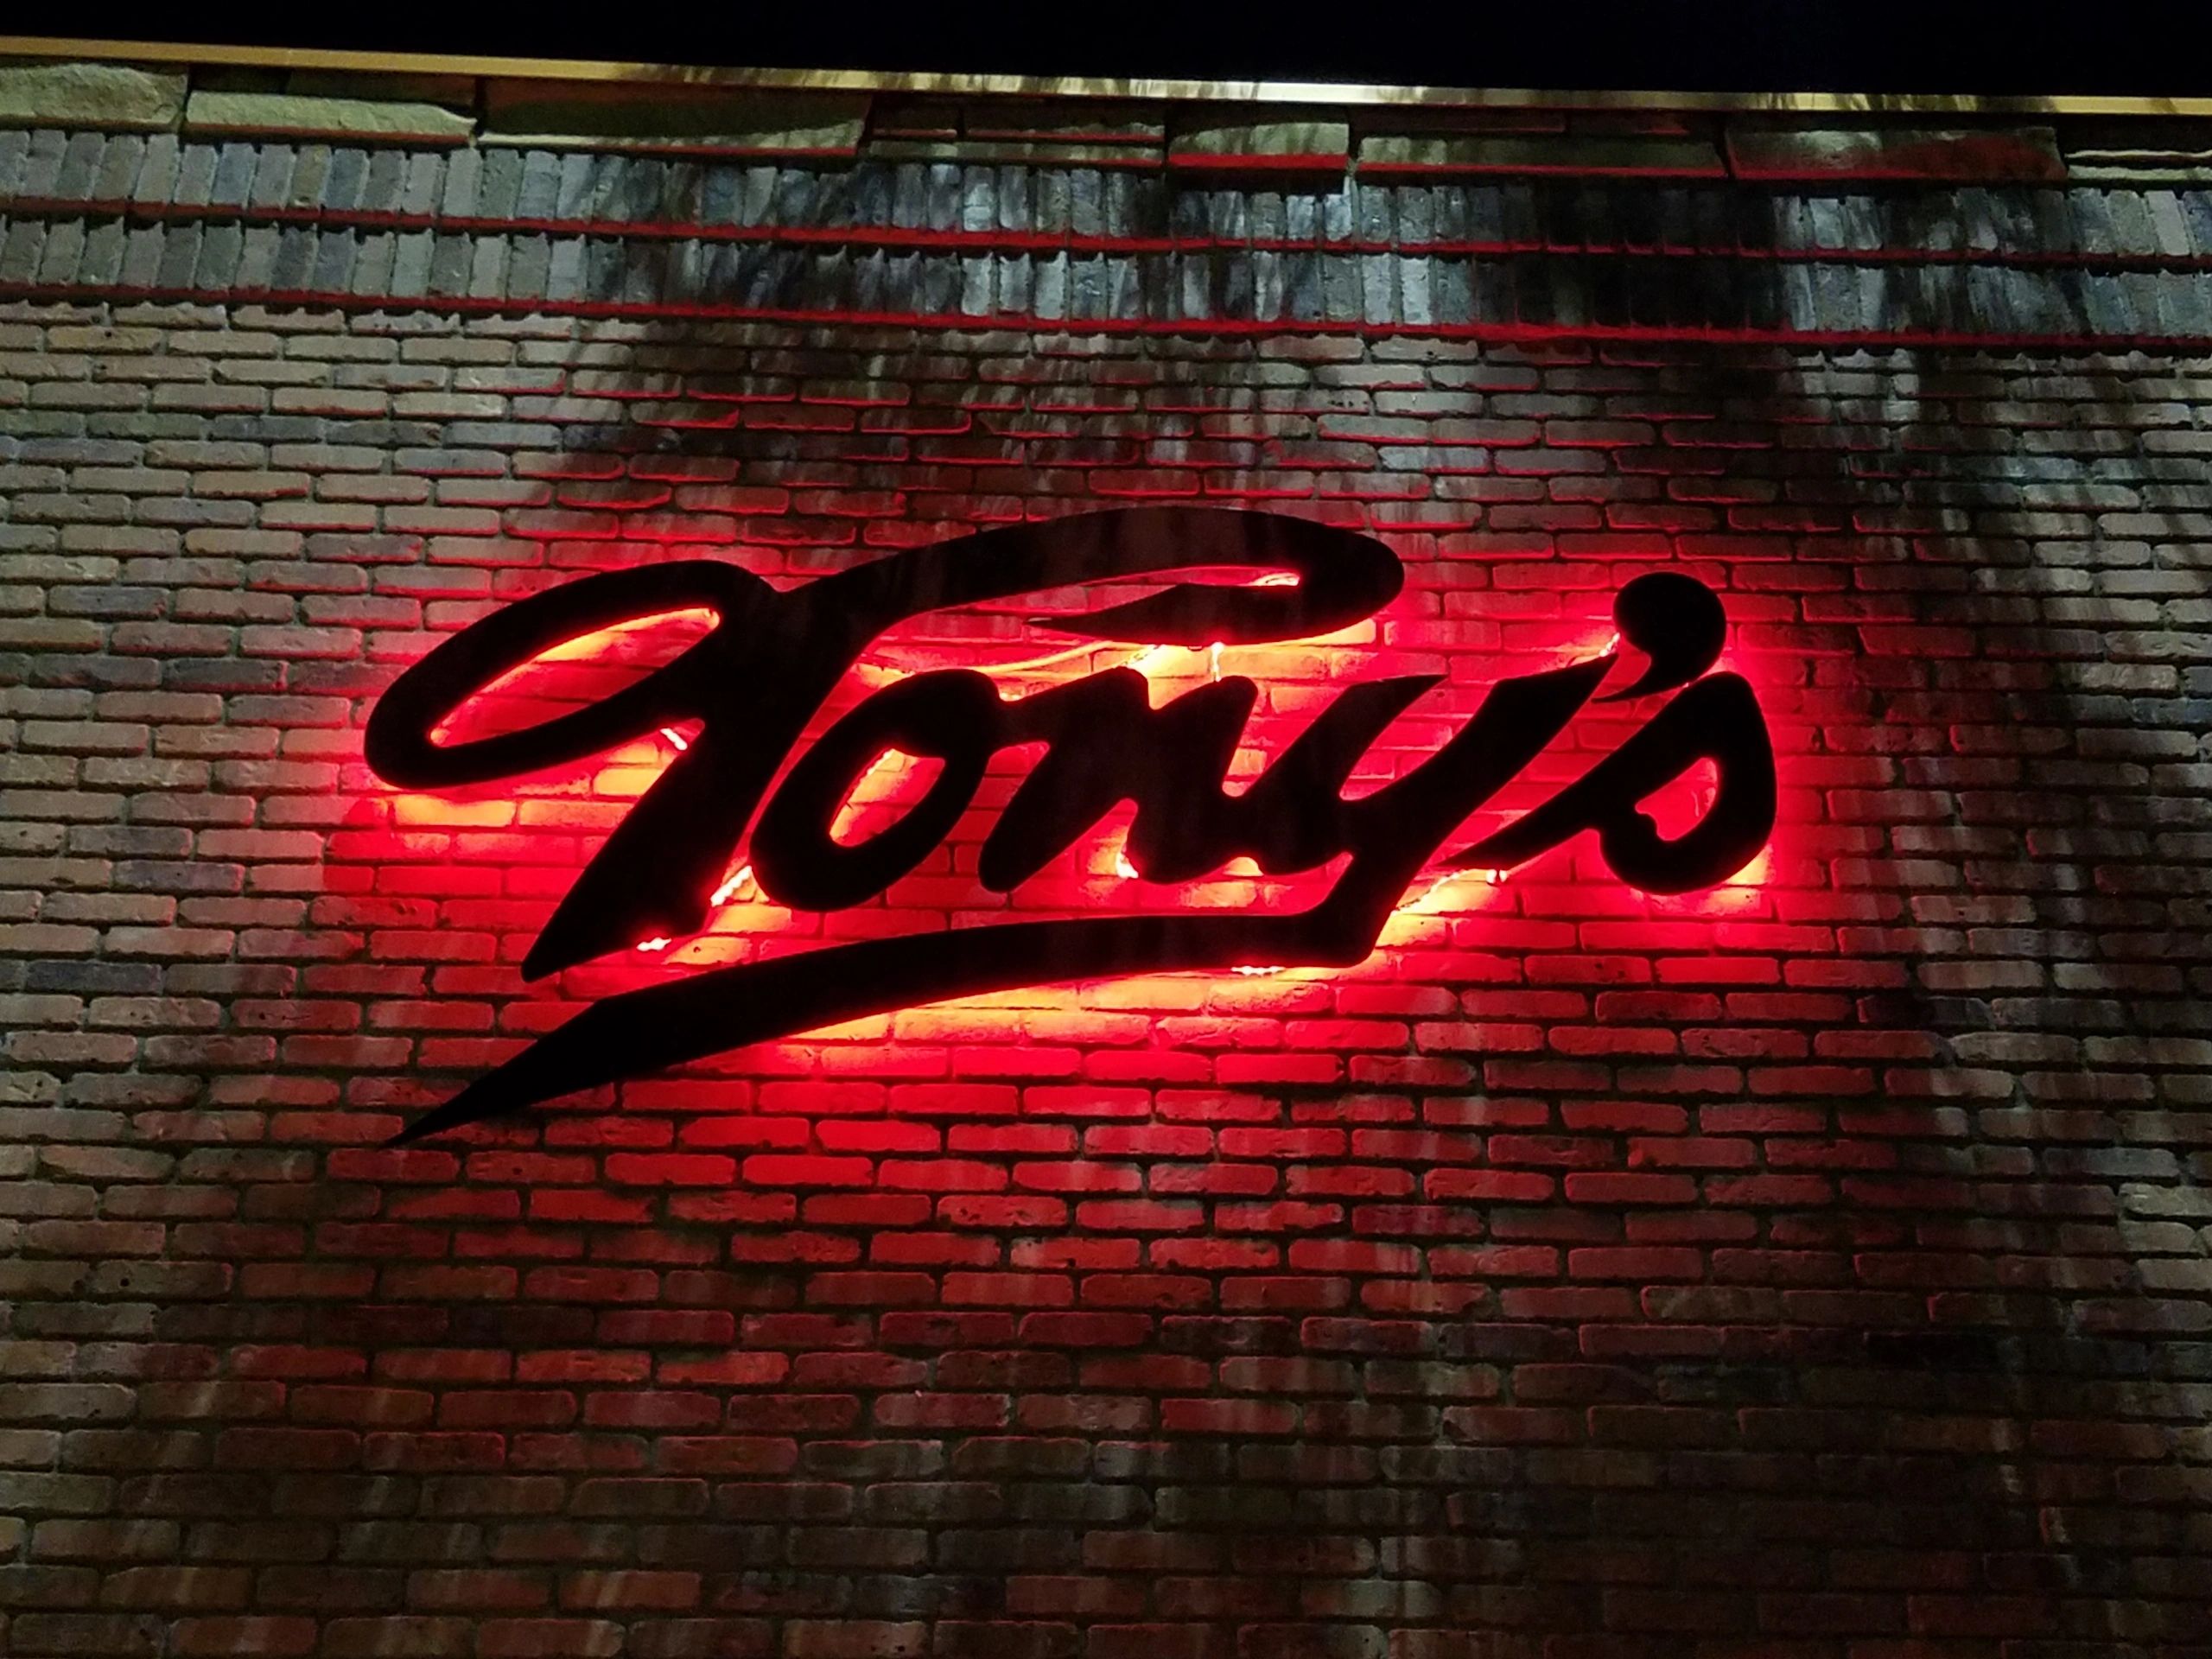 Thursday | Tony's Bar